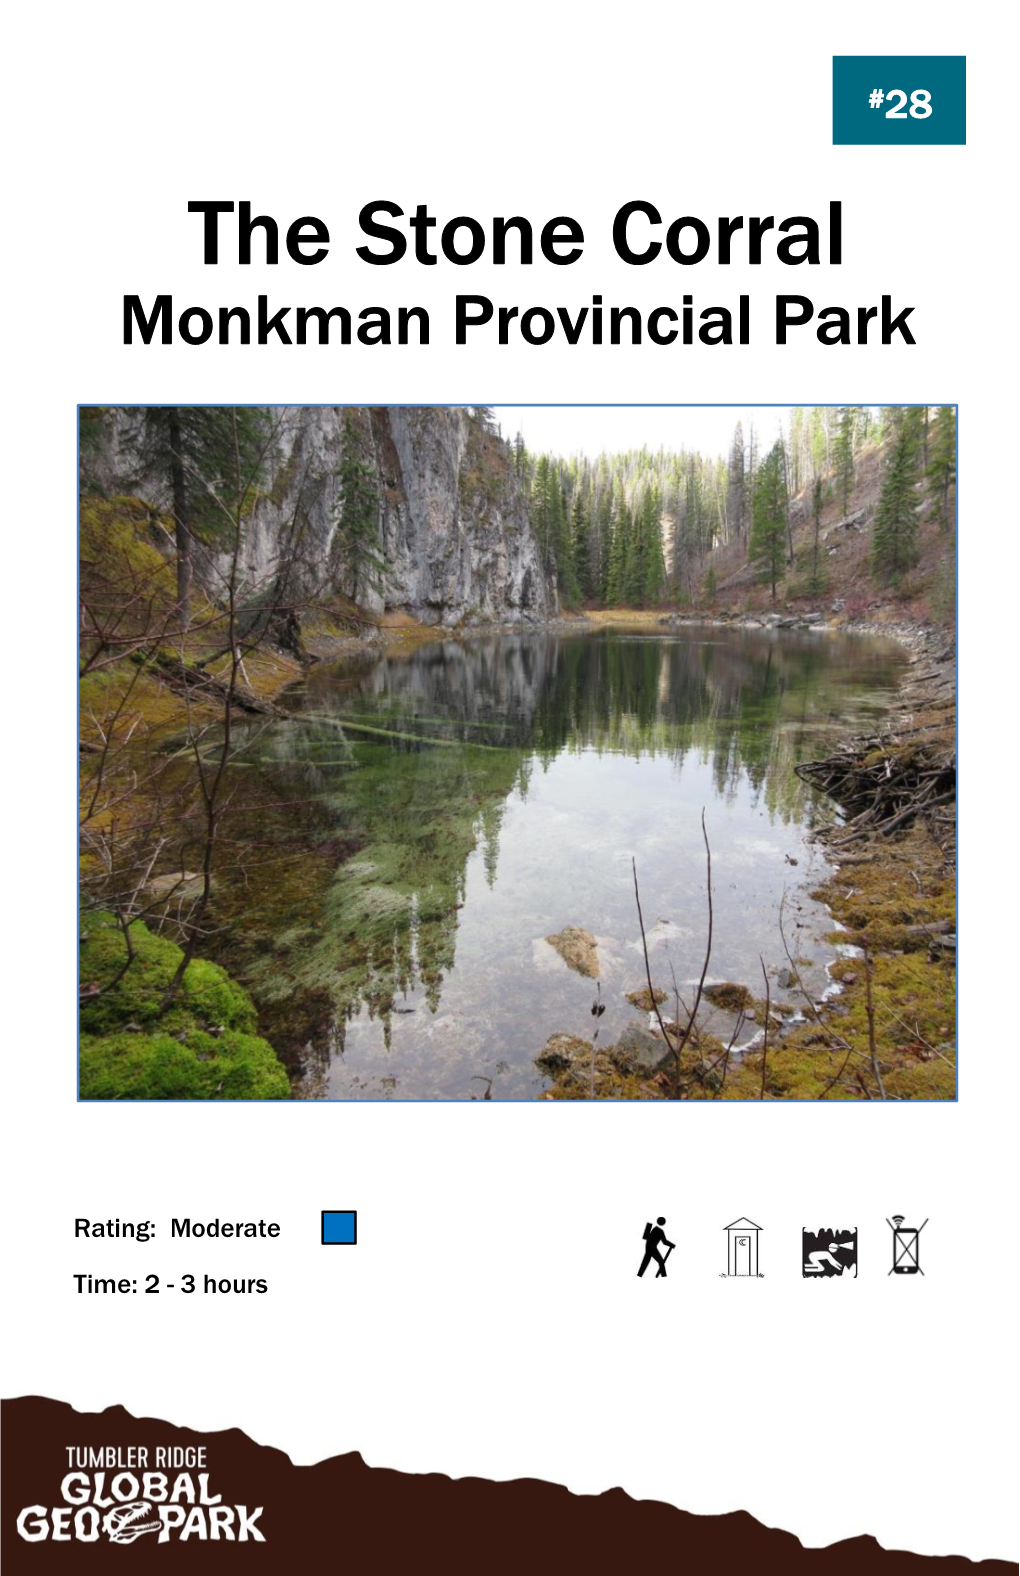 The Stone Corral Monkman Provincial Park